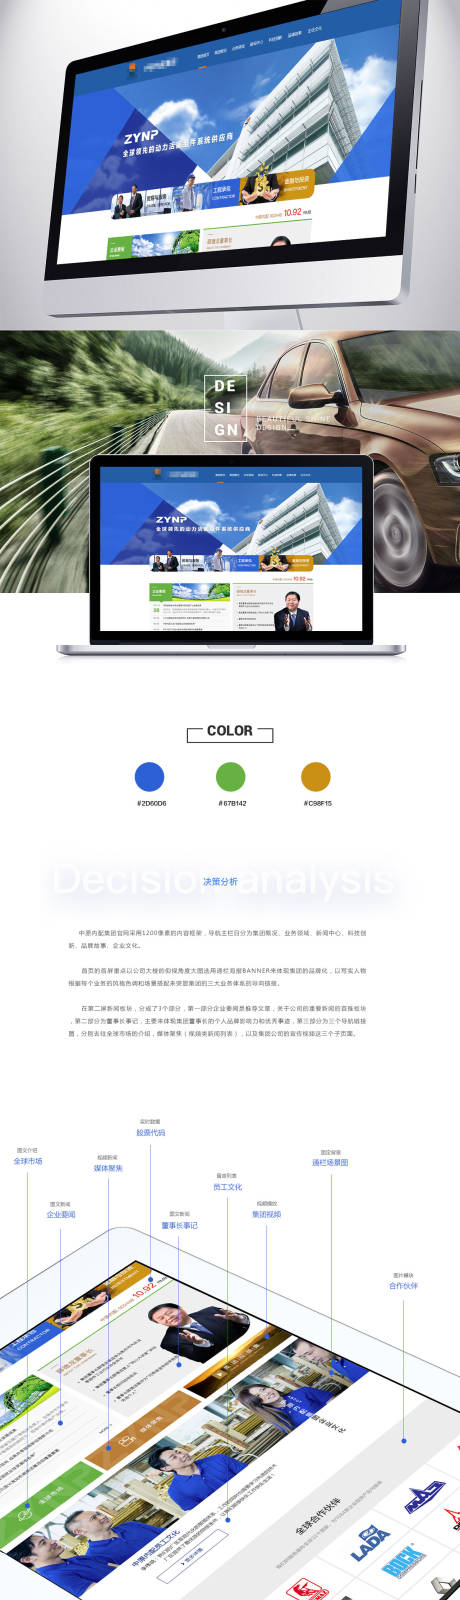 企业官网整套网站界面设计蓝色风格